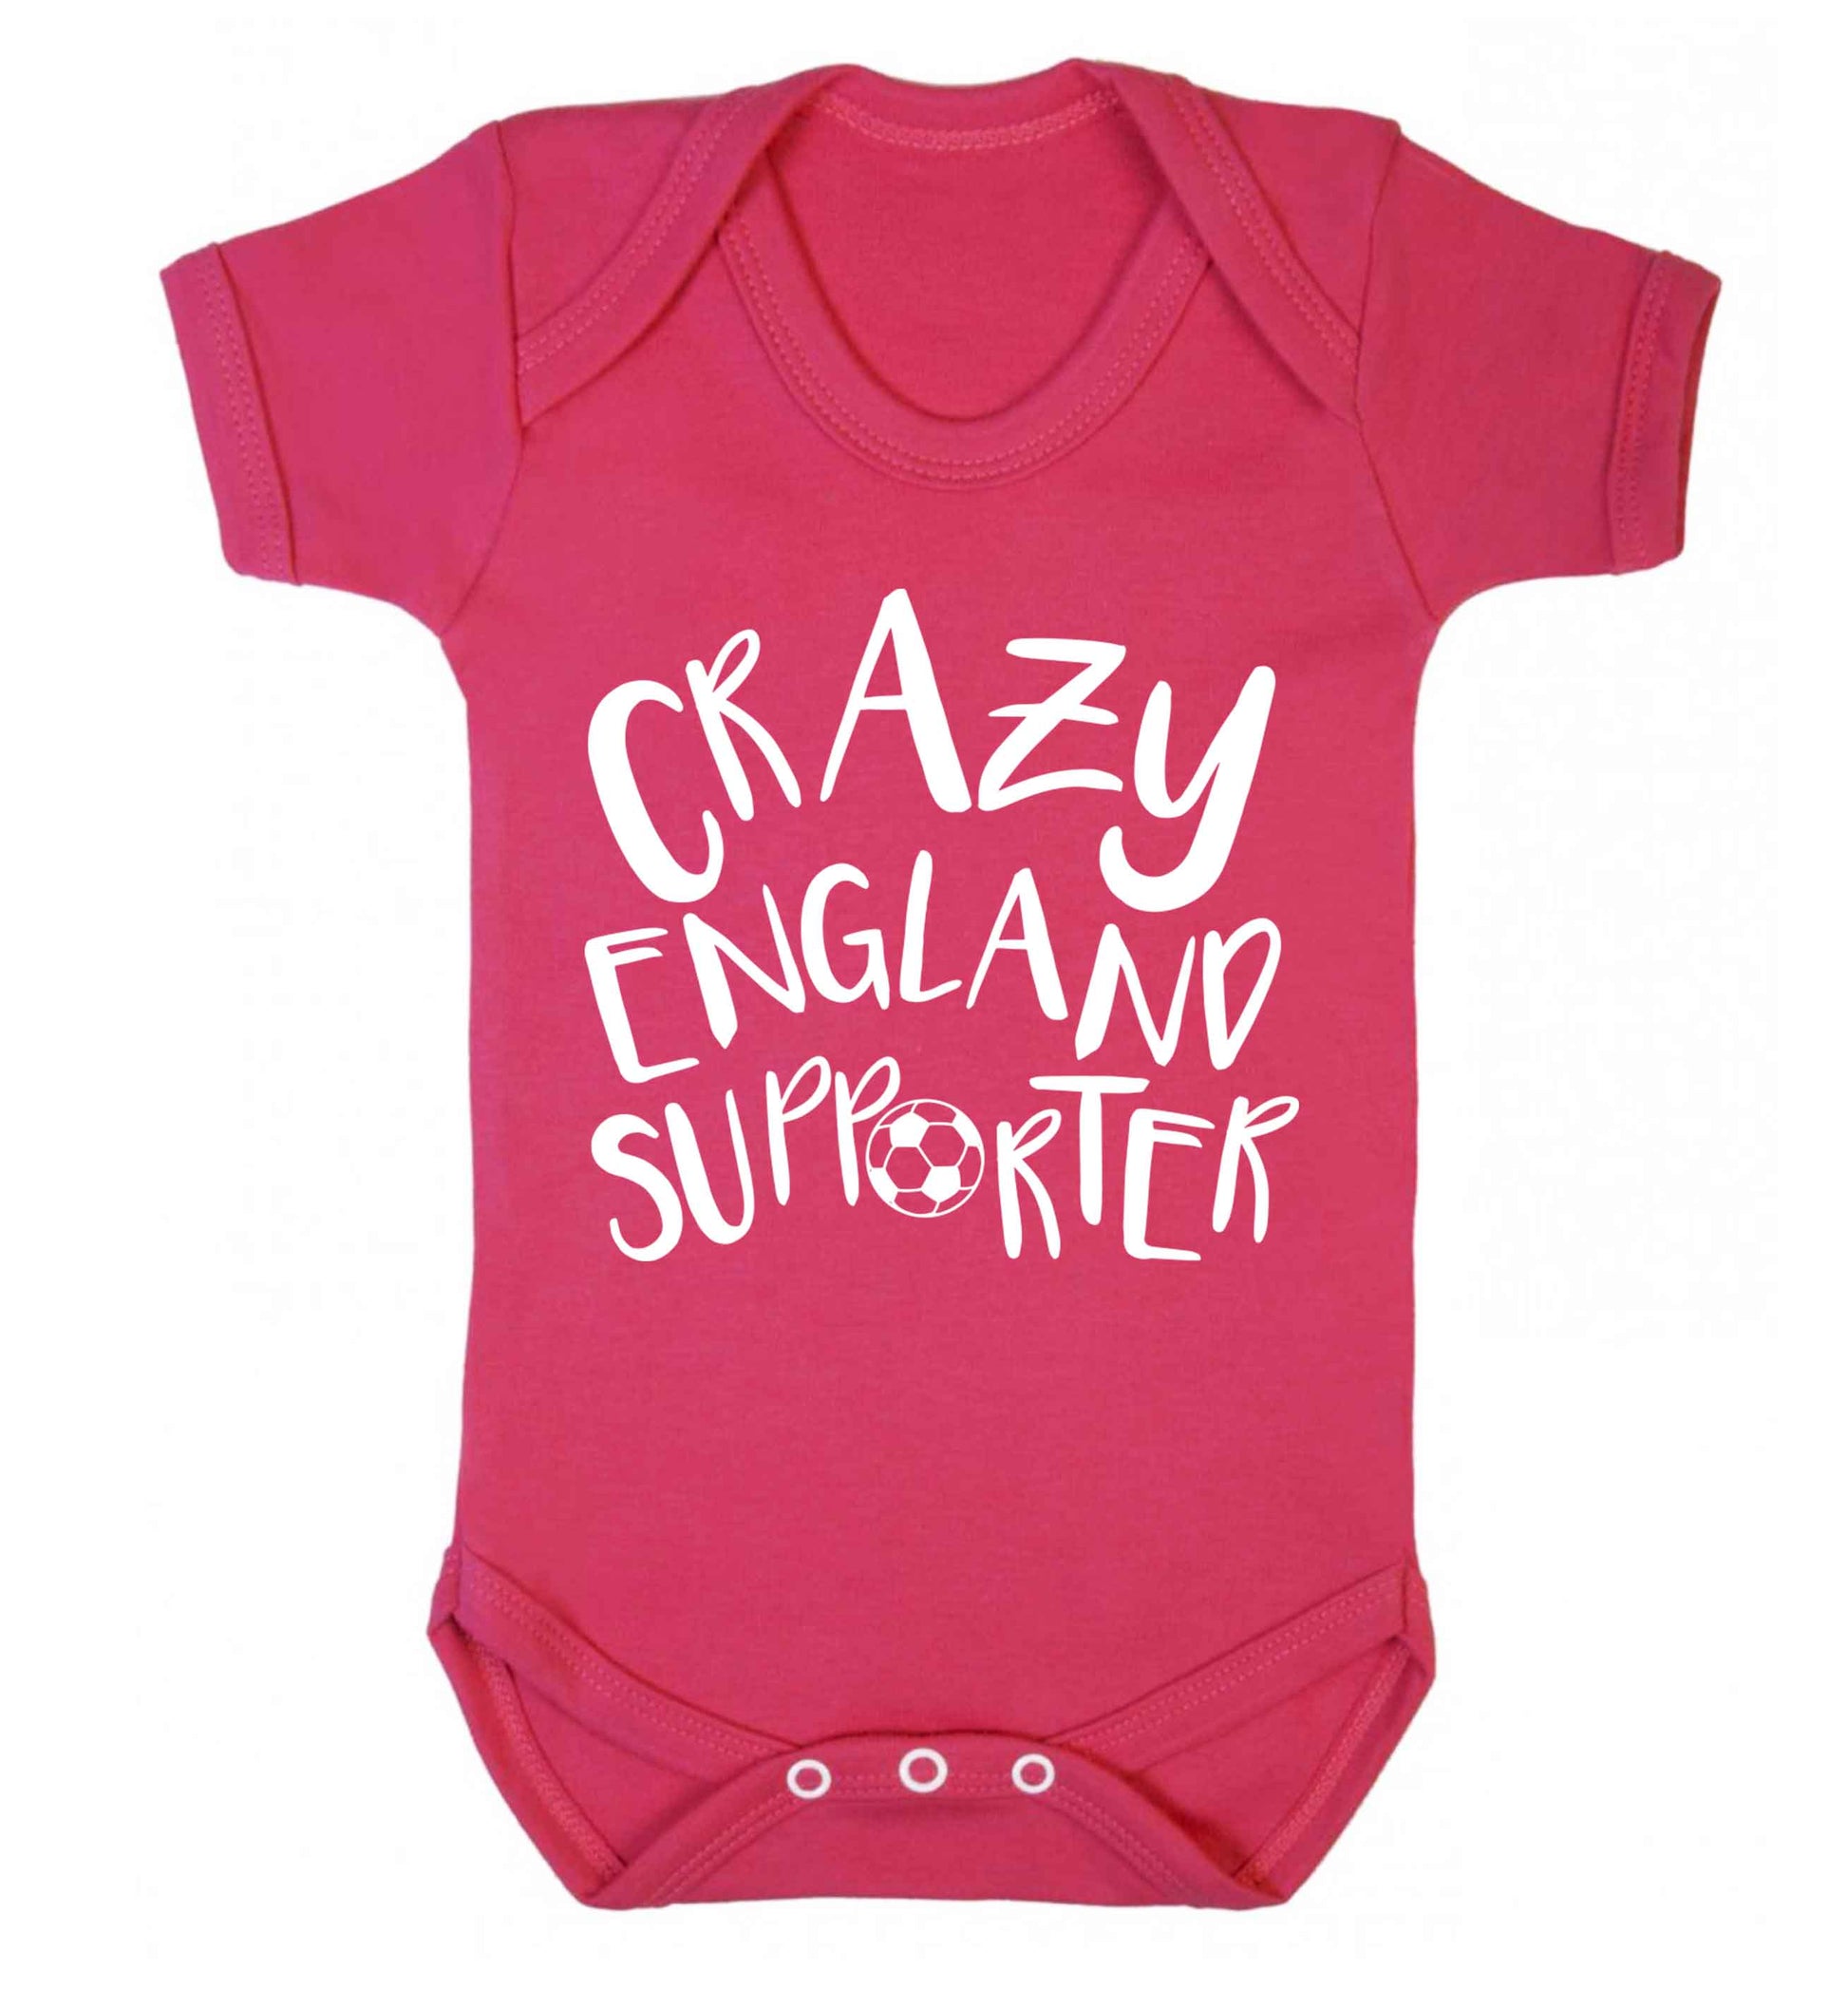 Crazy England supporter Baby Vest dark pink 18-24 months